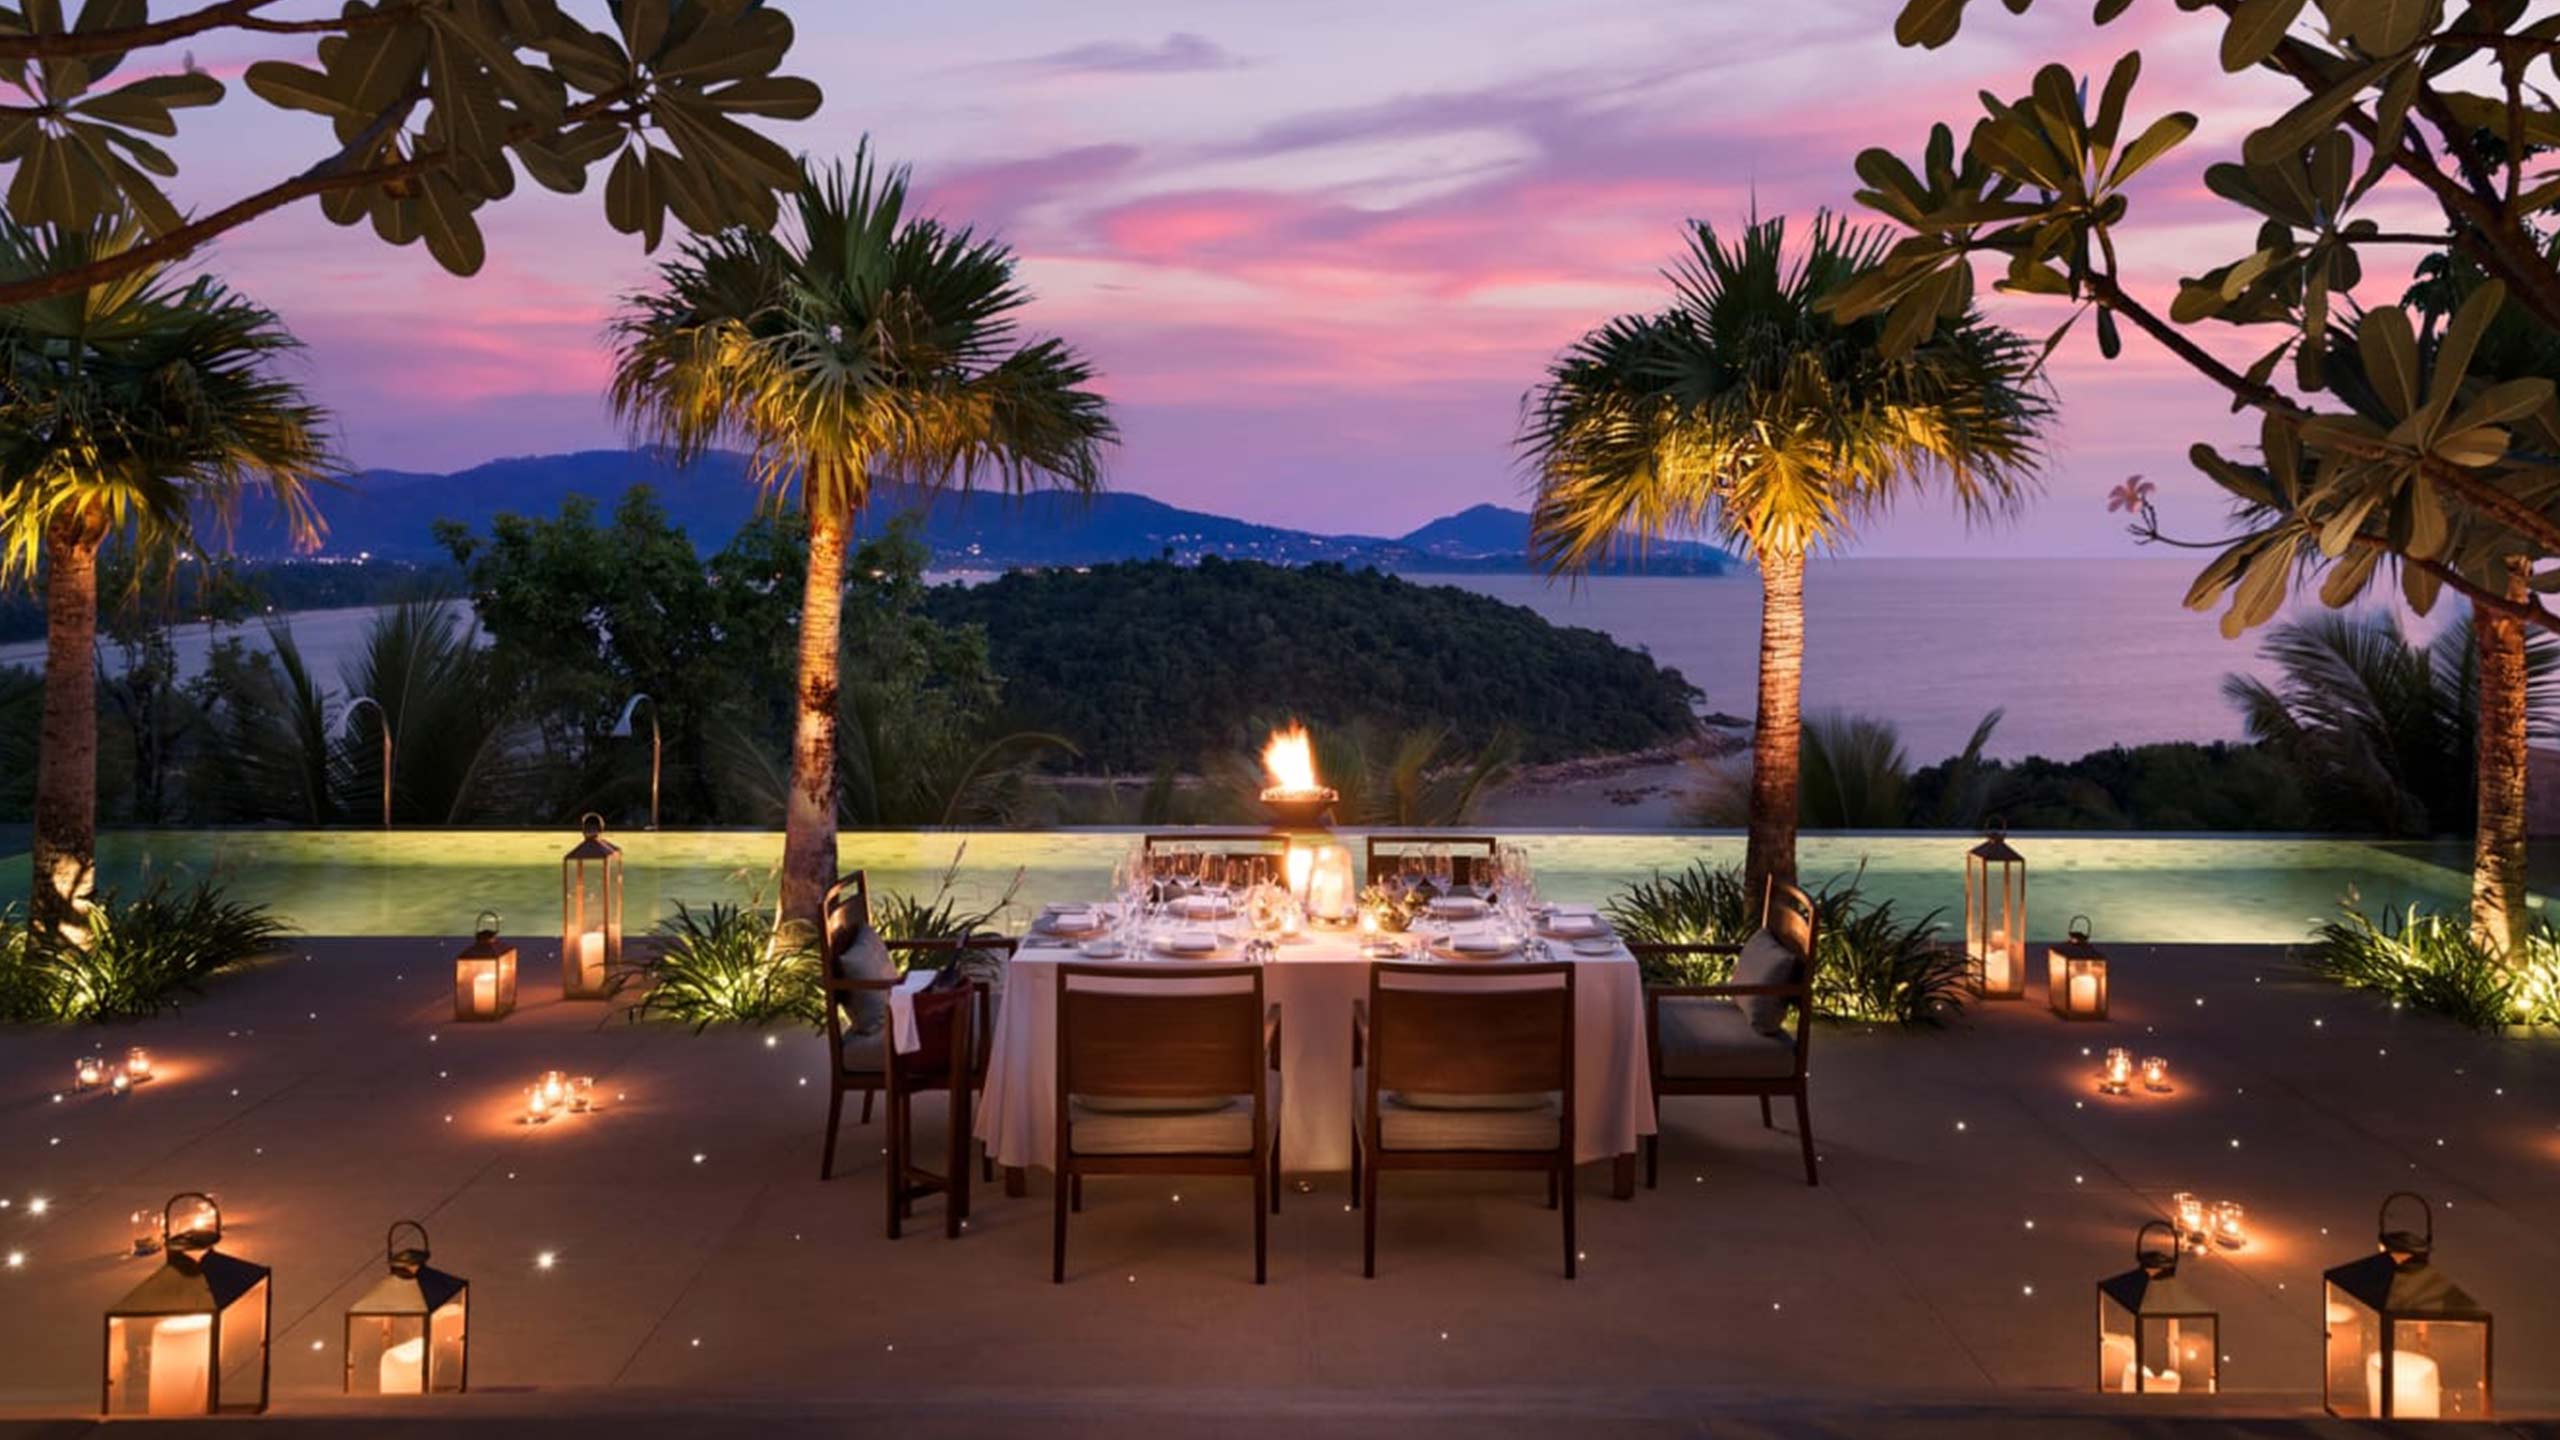 anantara-layan-phuket-resort-thailand-dining-sunset